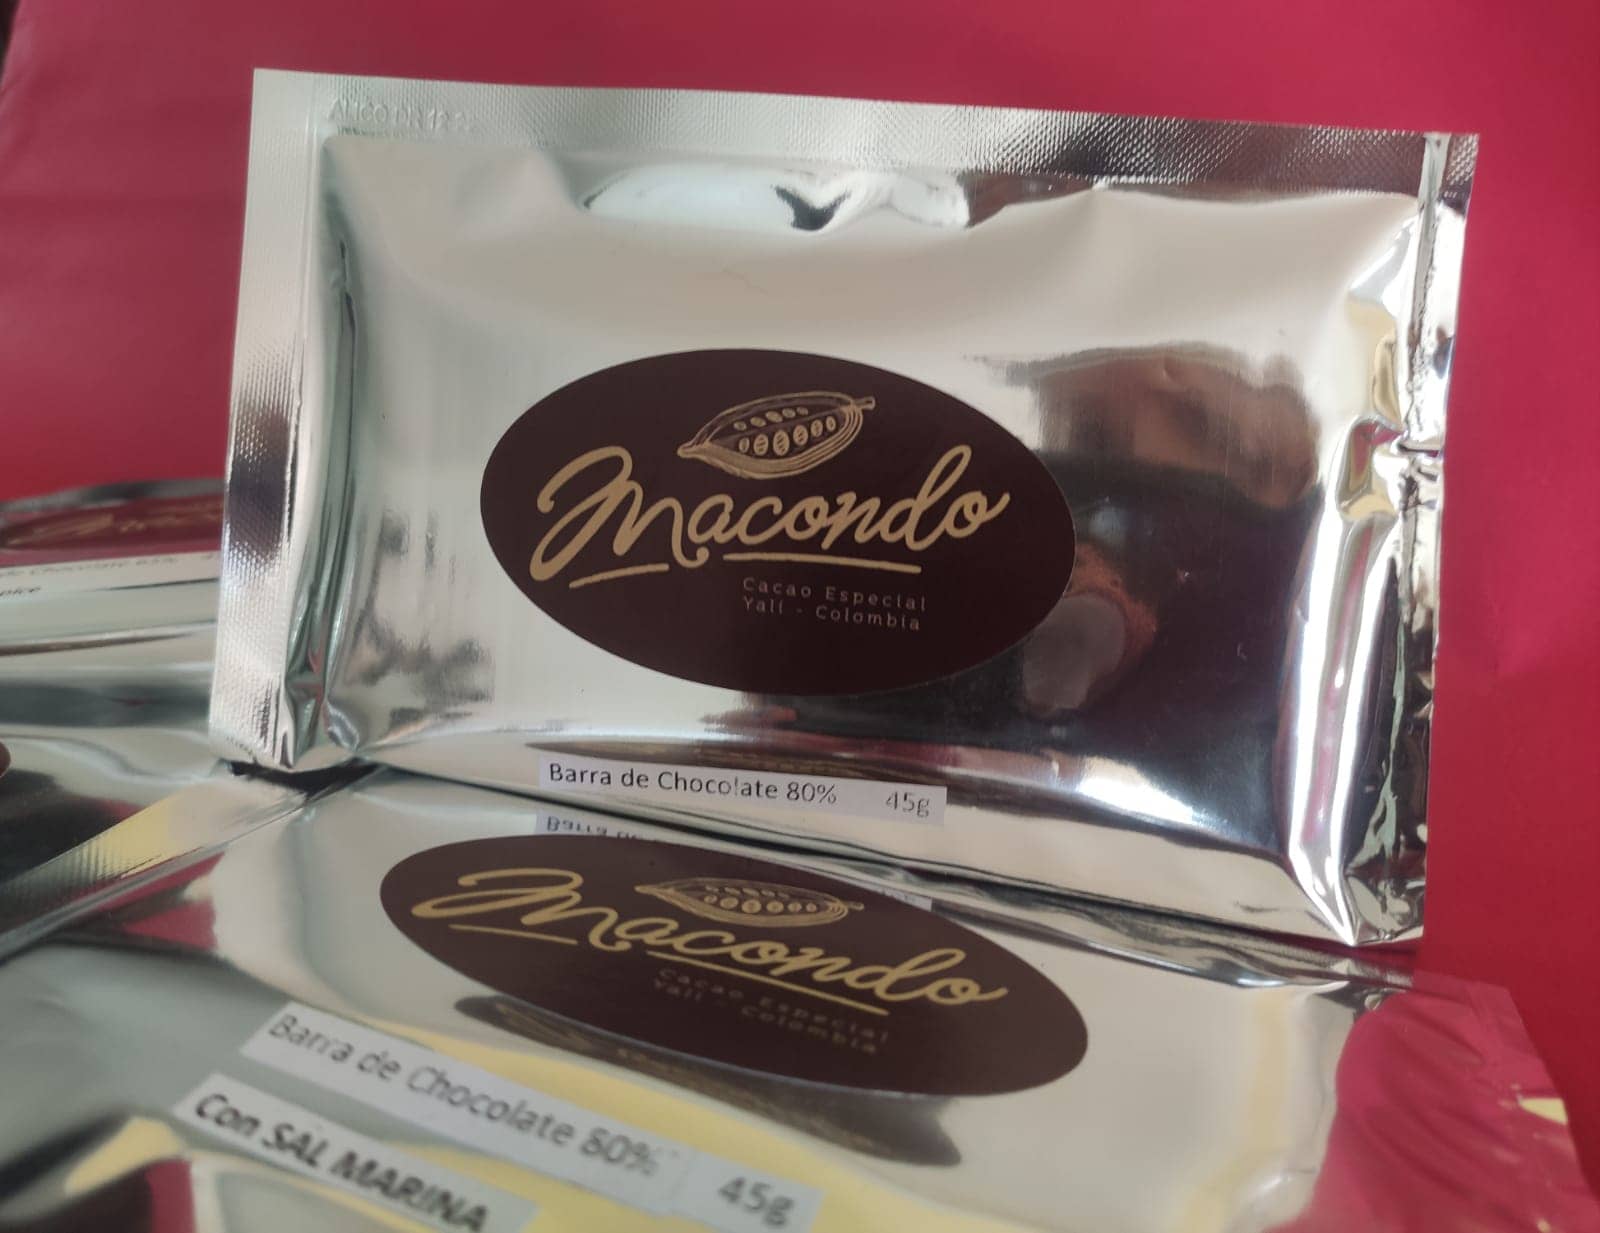 Barra de Chocolate al 70% con Nibs de cacao